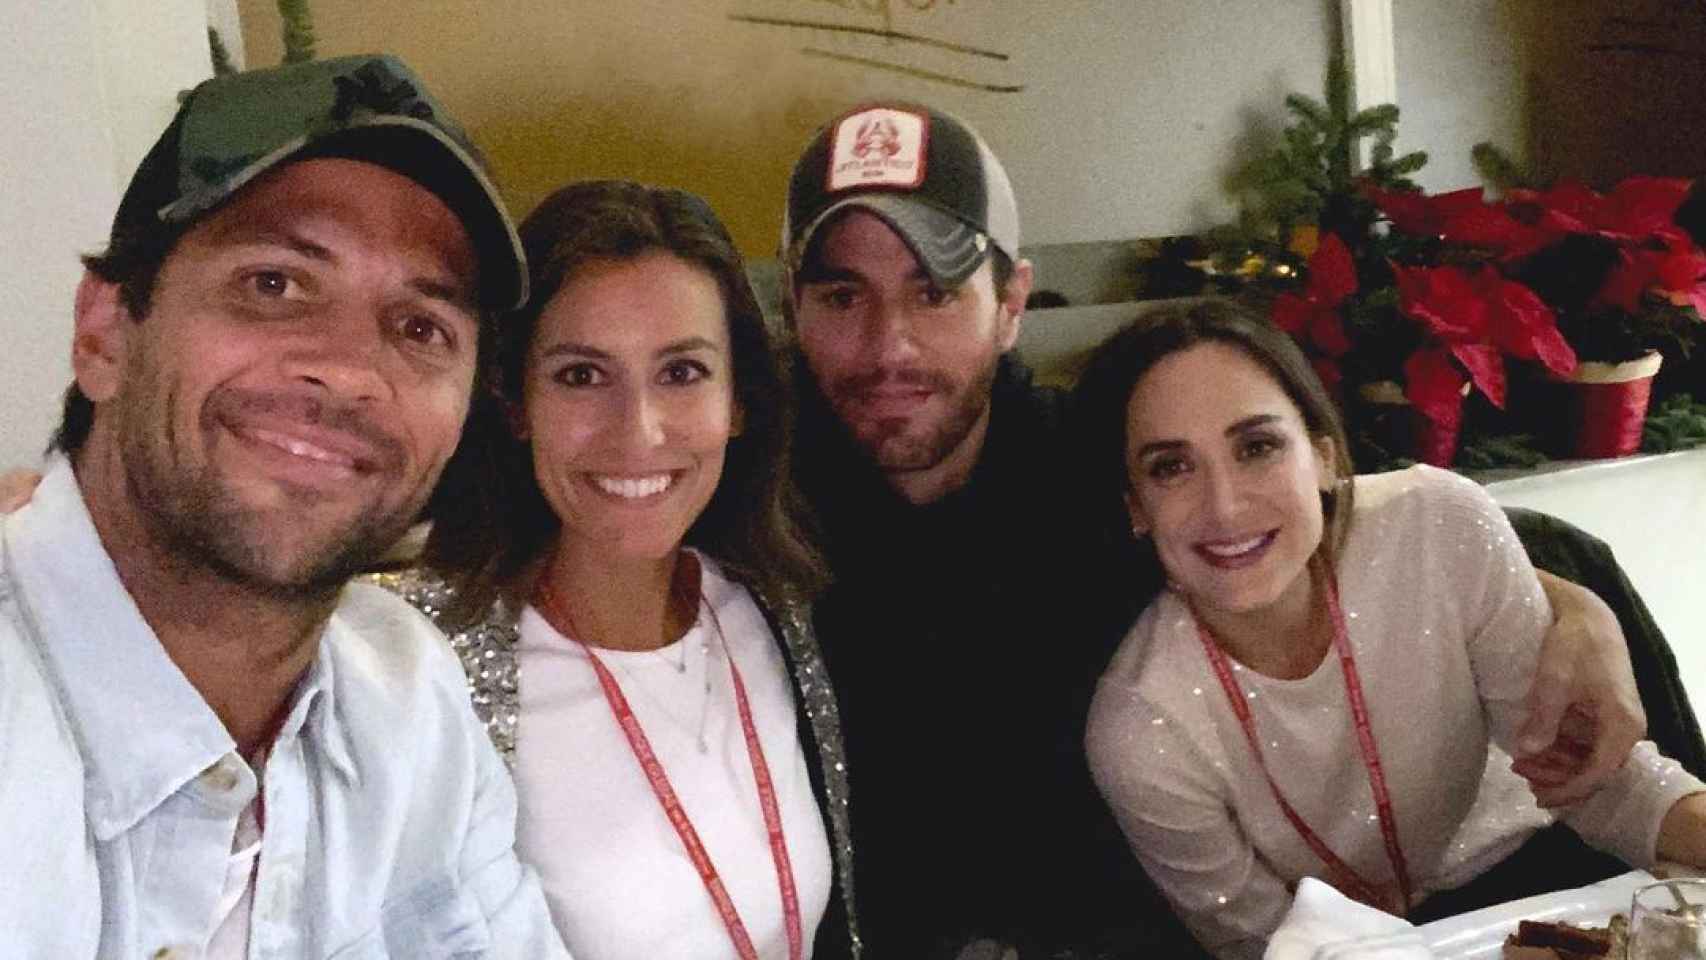 Fernando Ferdasco, Ana Boyer, Enrique Iglesias y Tamara Falcó en una imagen en la que el cantante luce gorra de Cocowi Brand.